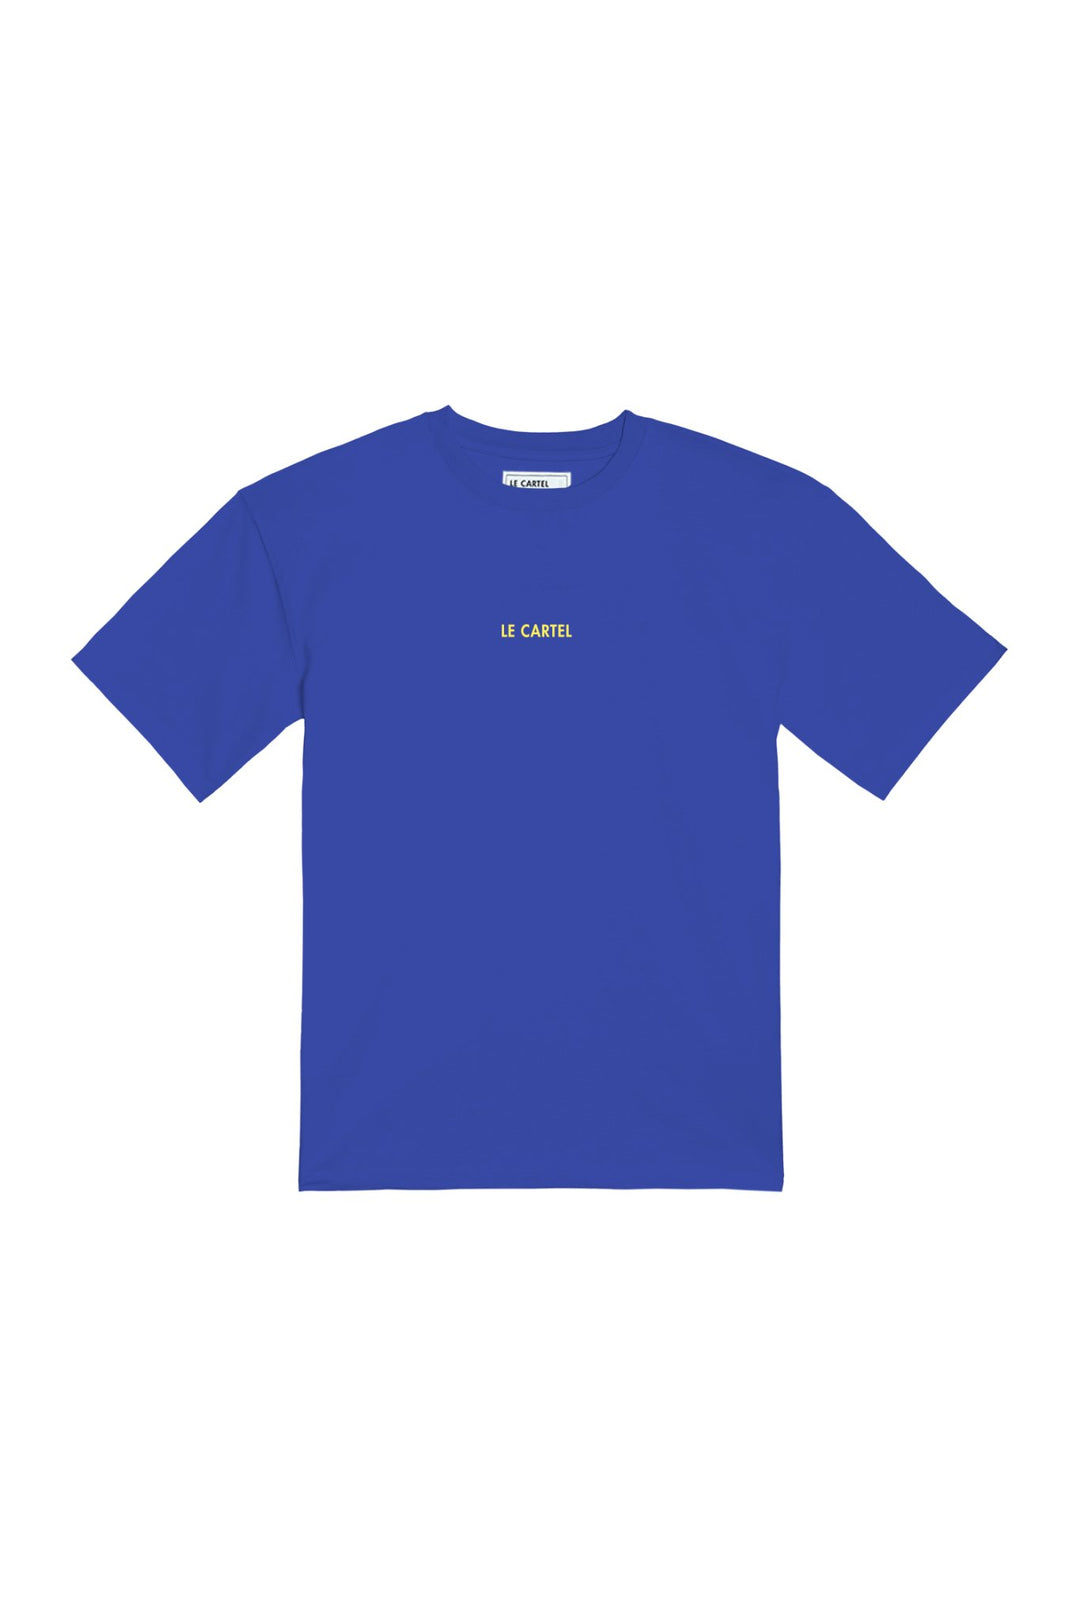 TRANS - CHATLANTIQUE・T - shirt unisexe・Bleu - Le Cartel